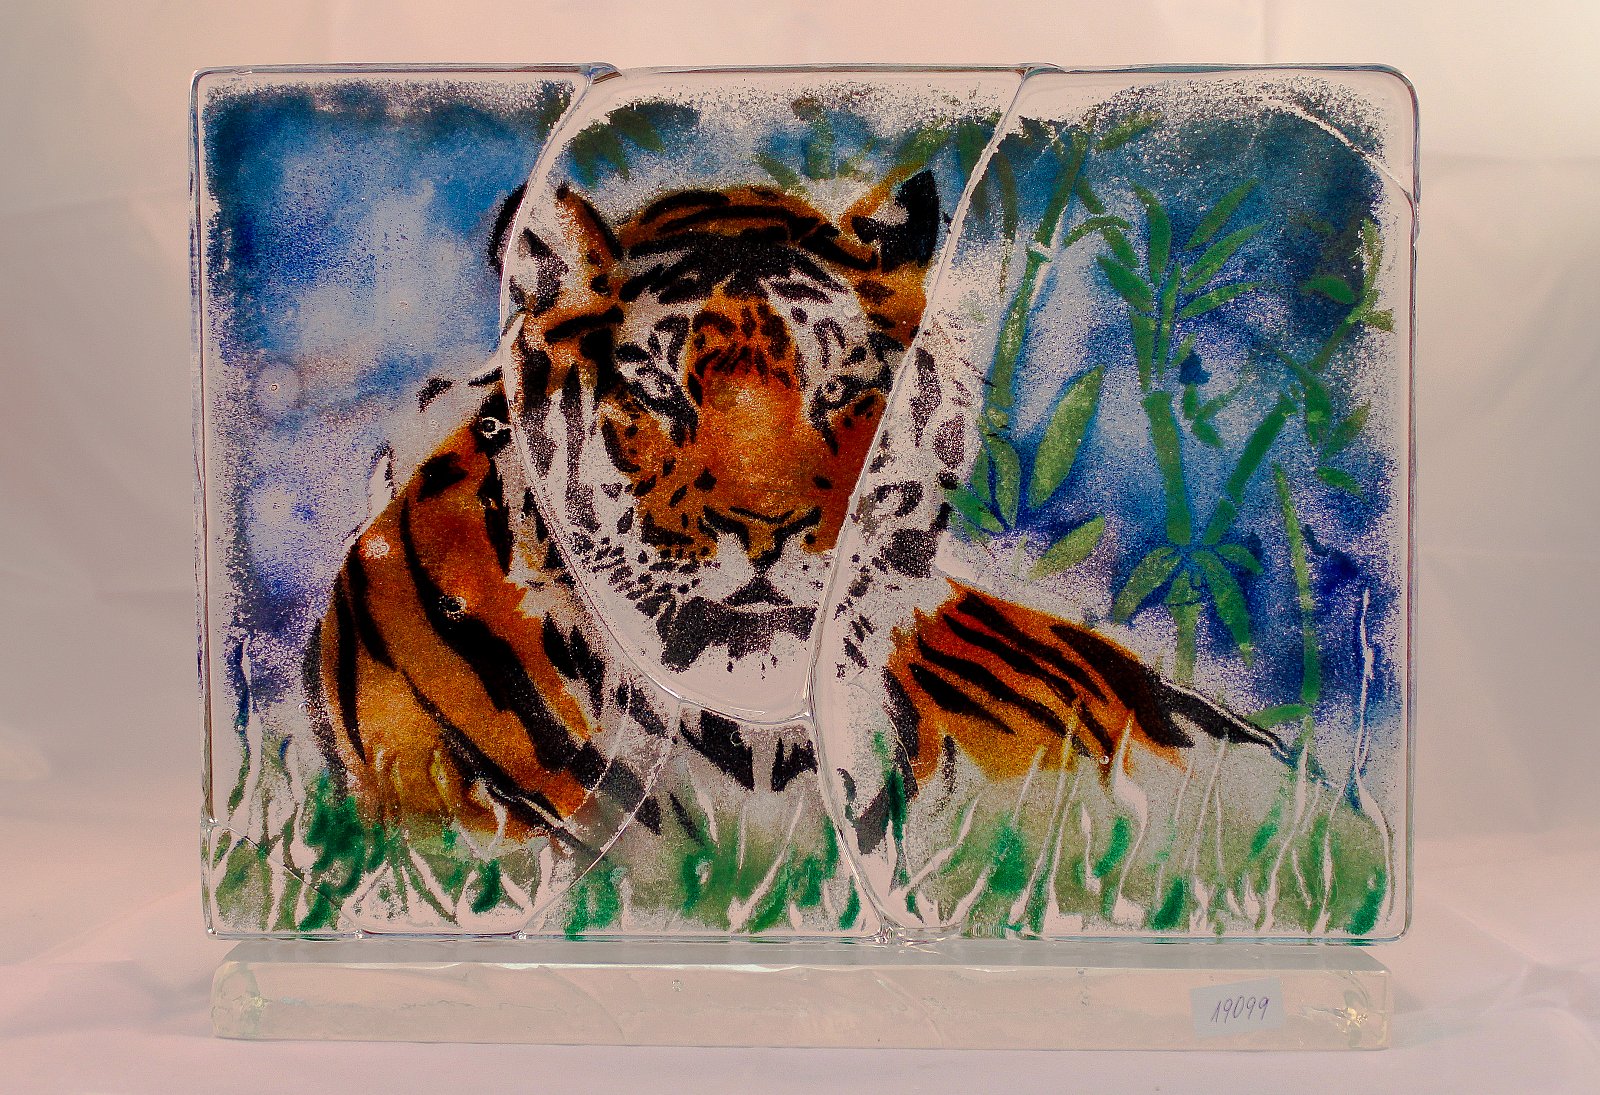 Skleněný obraz "Tygr" - obrázek